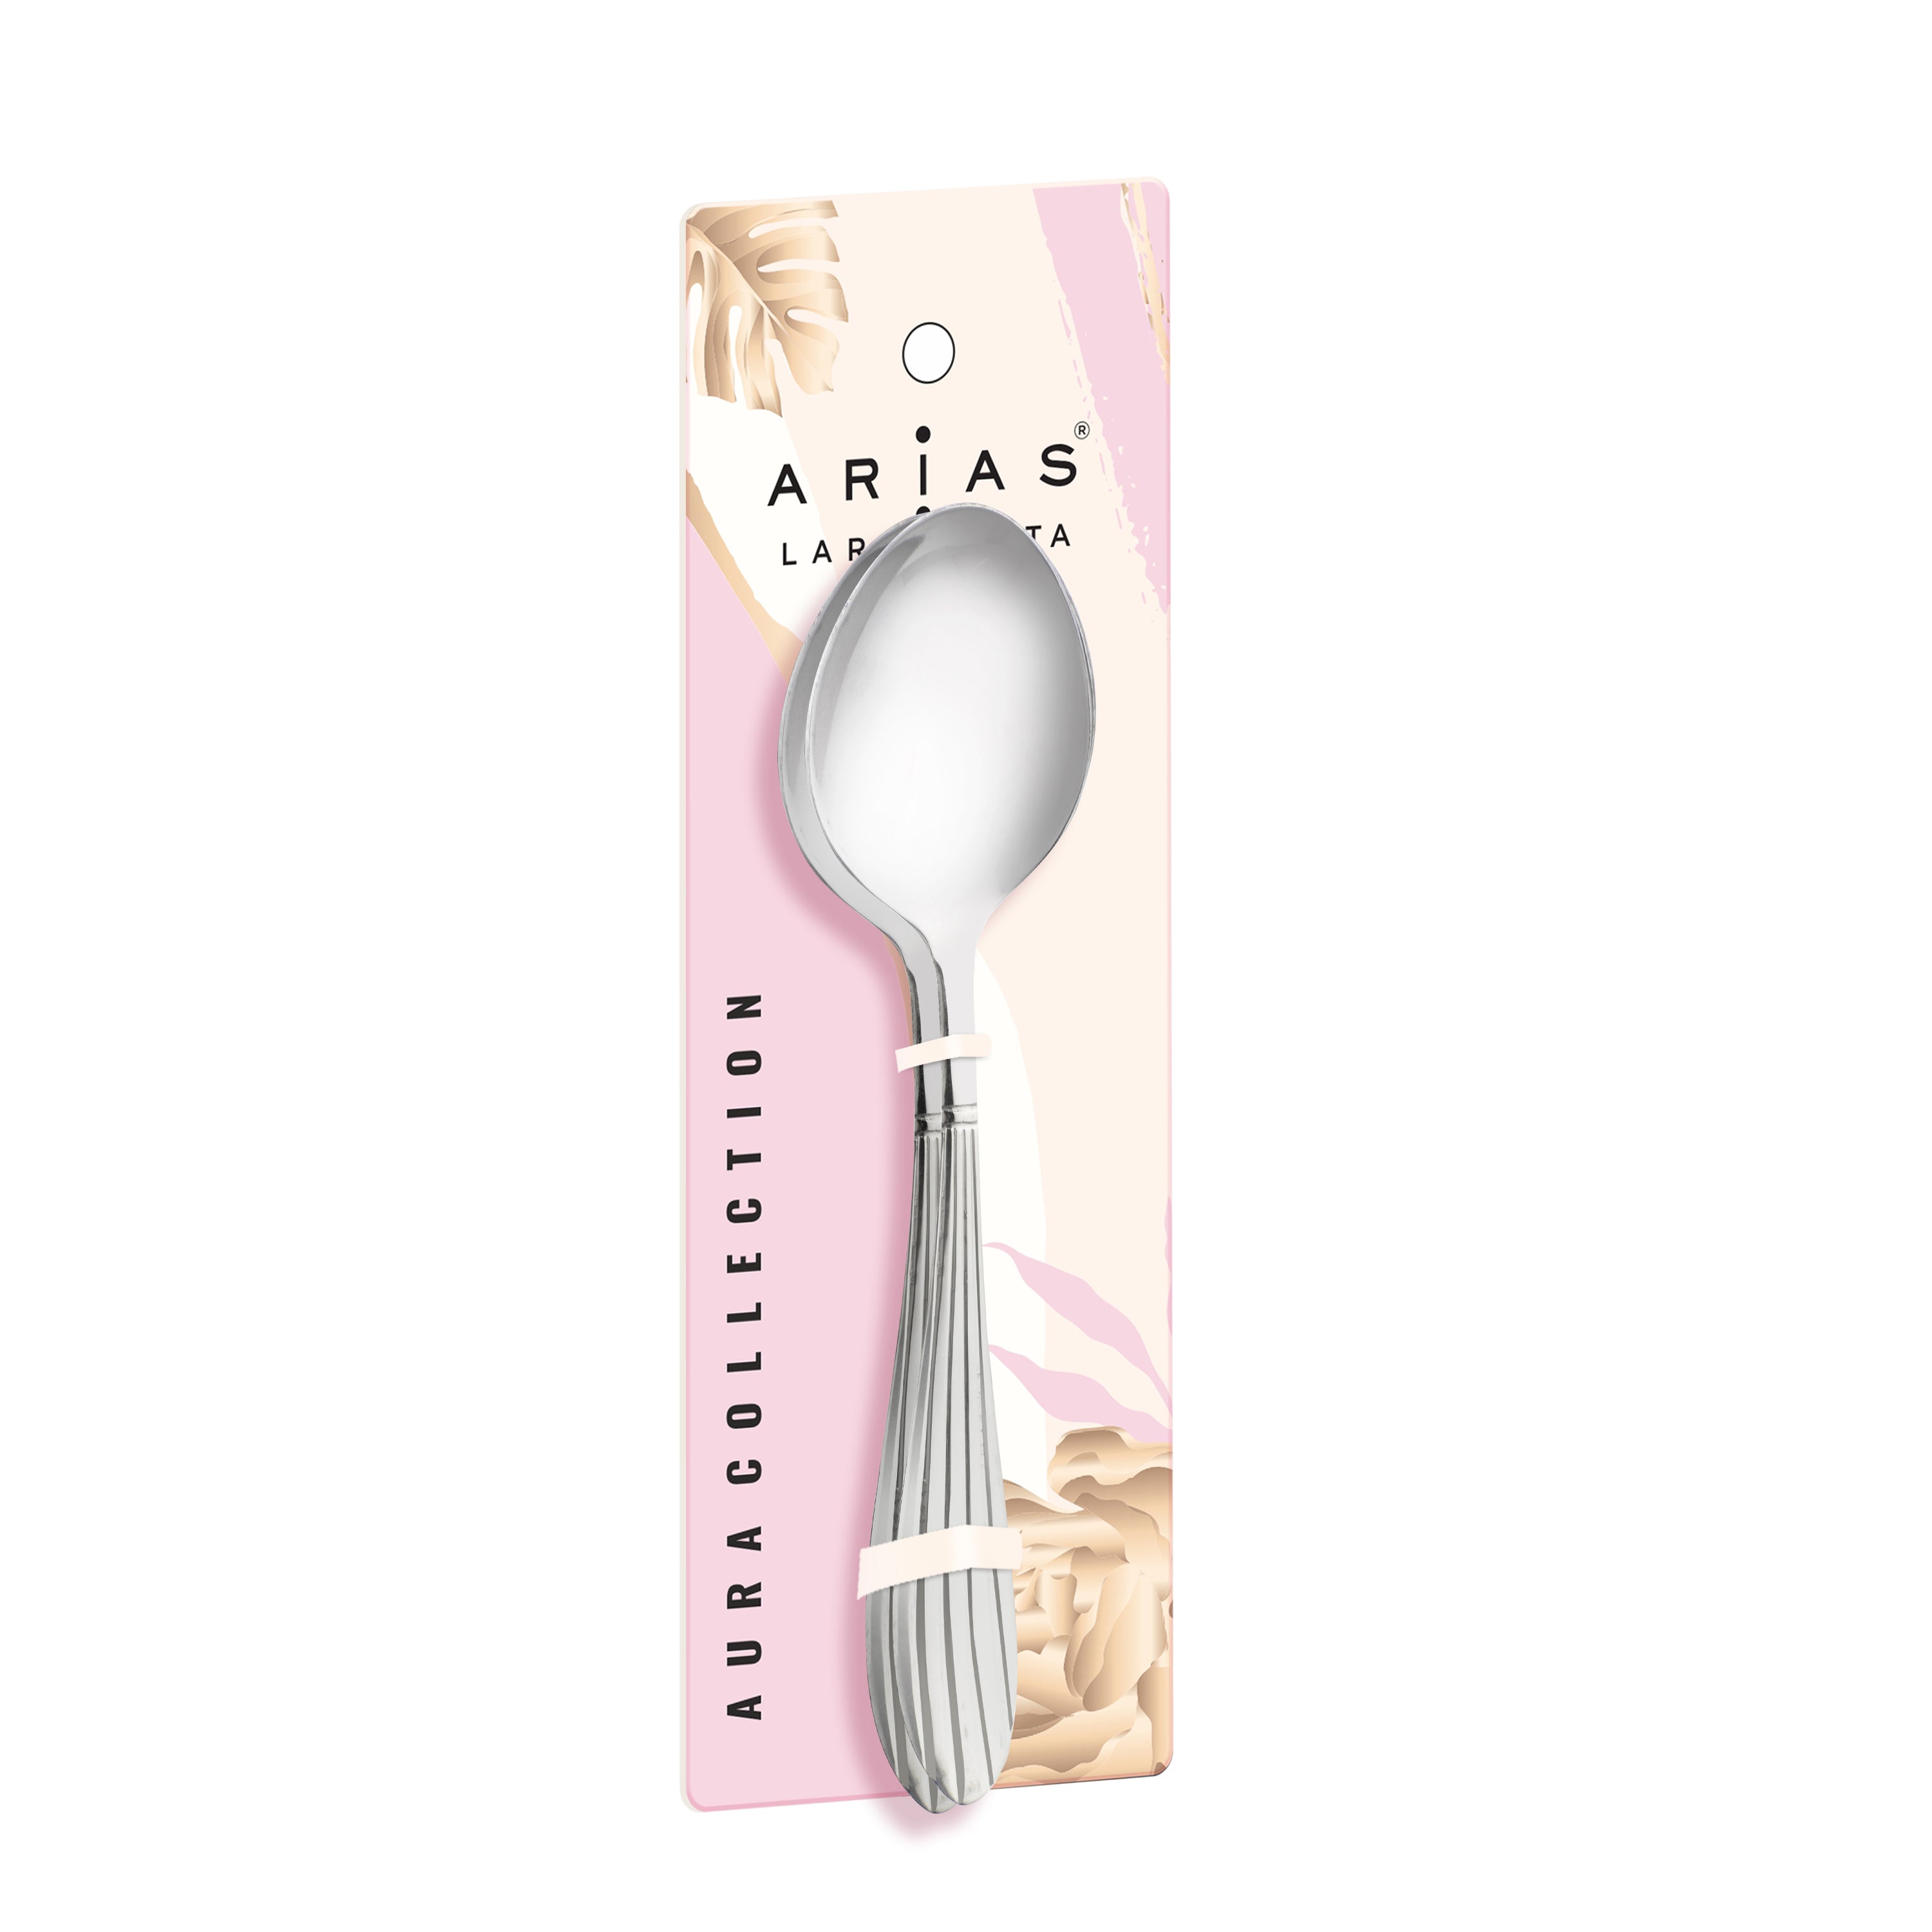 Arias Sysco Serving Spoon Set of 2 (Silver)